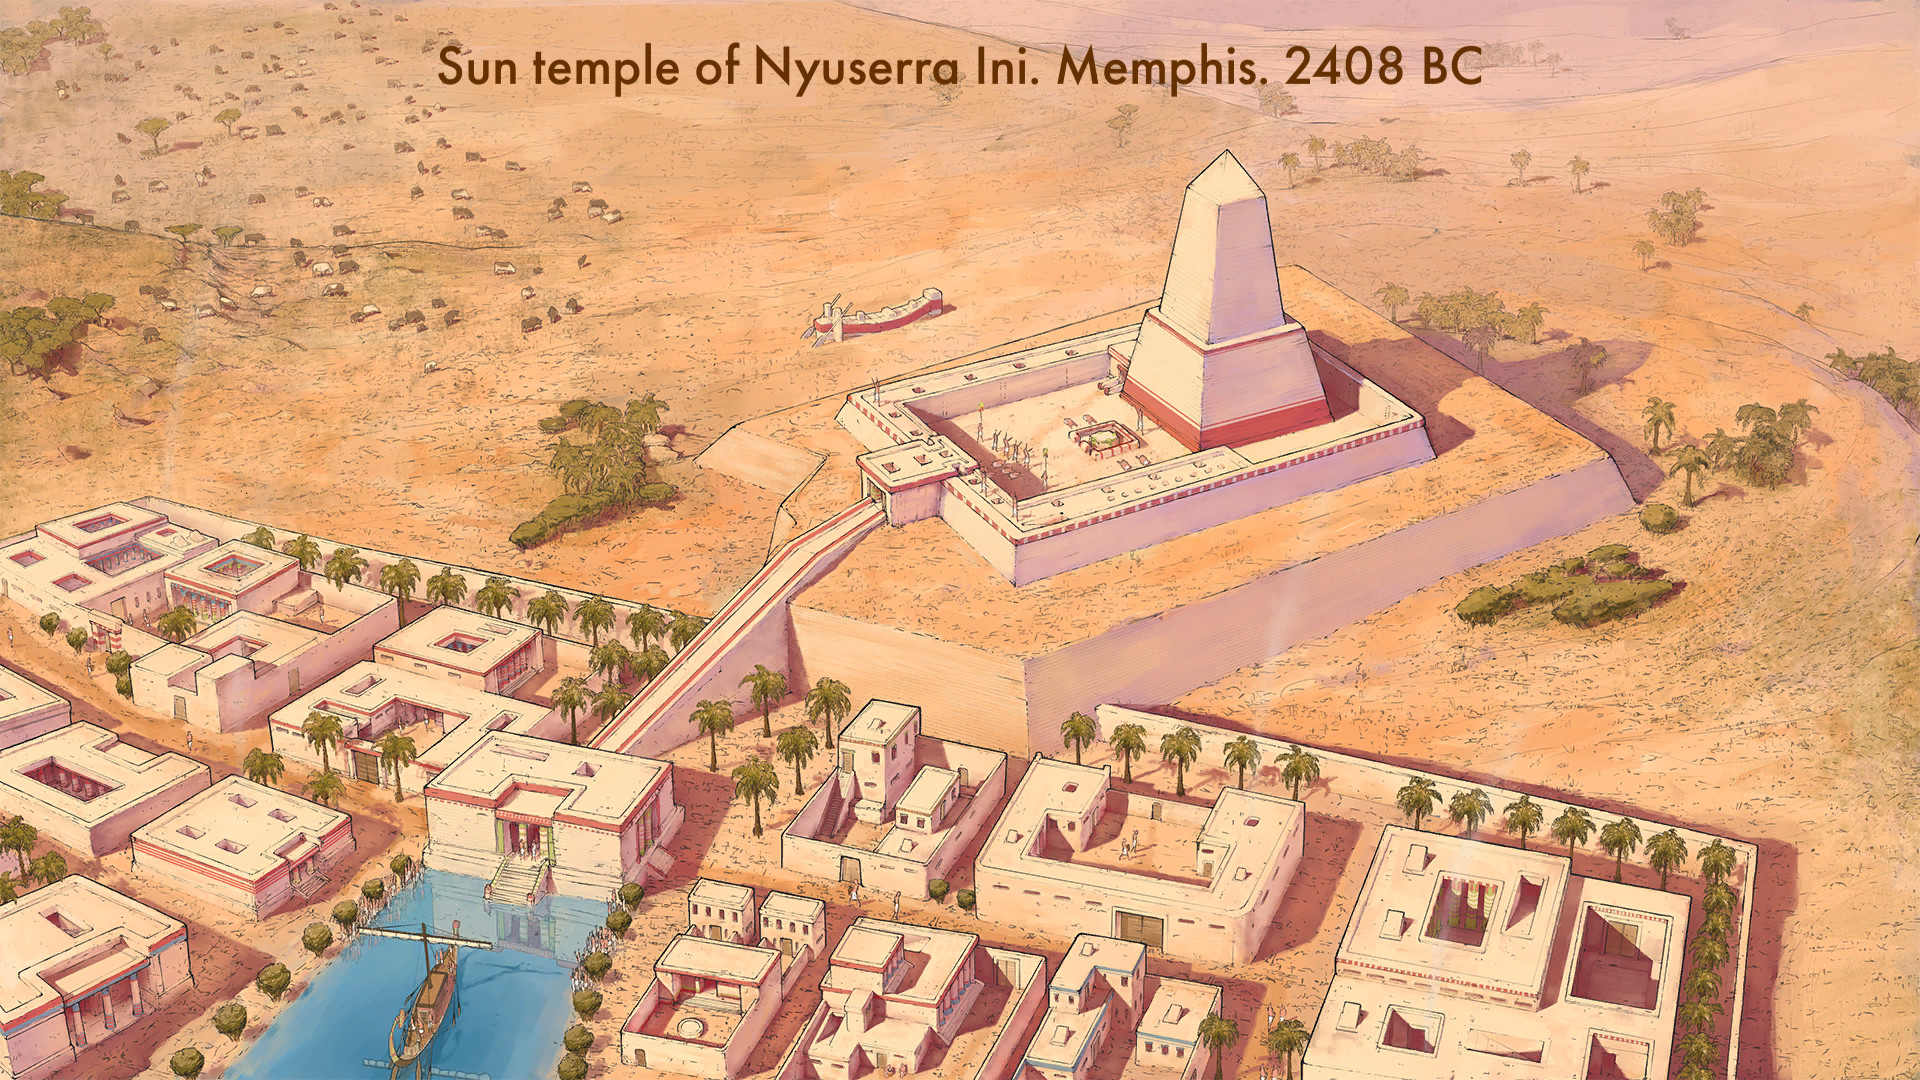 เกมกลยุทธ์มือถือที่ดีที่สุด: อียิปต์: อาณาจักรเก่า รูปภาพแสดงการตั้งถิ่นฐานของอียิปต์โบราณพร้อมข้อความที่อ่าน